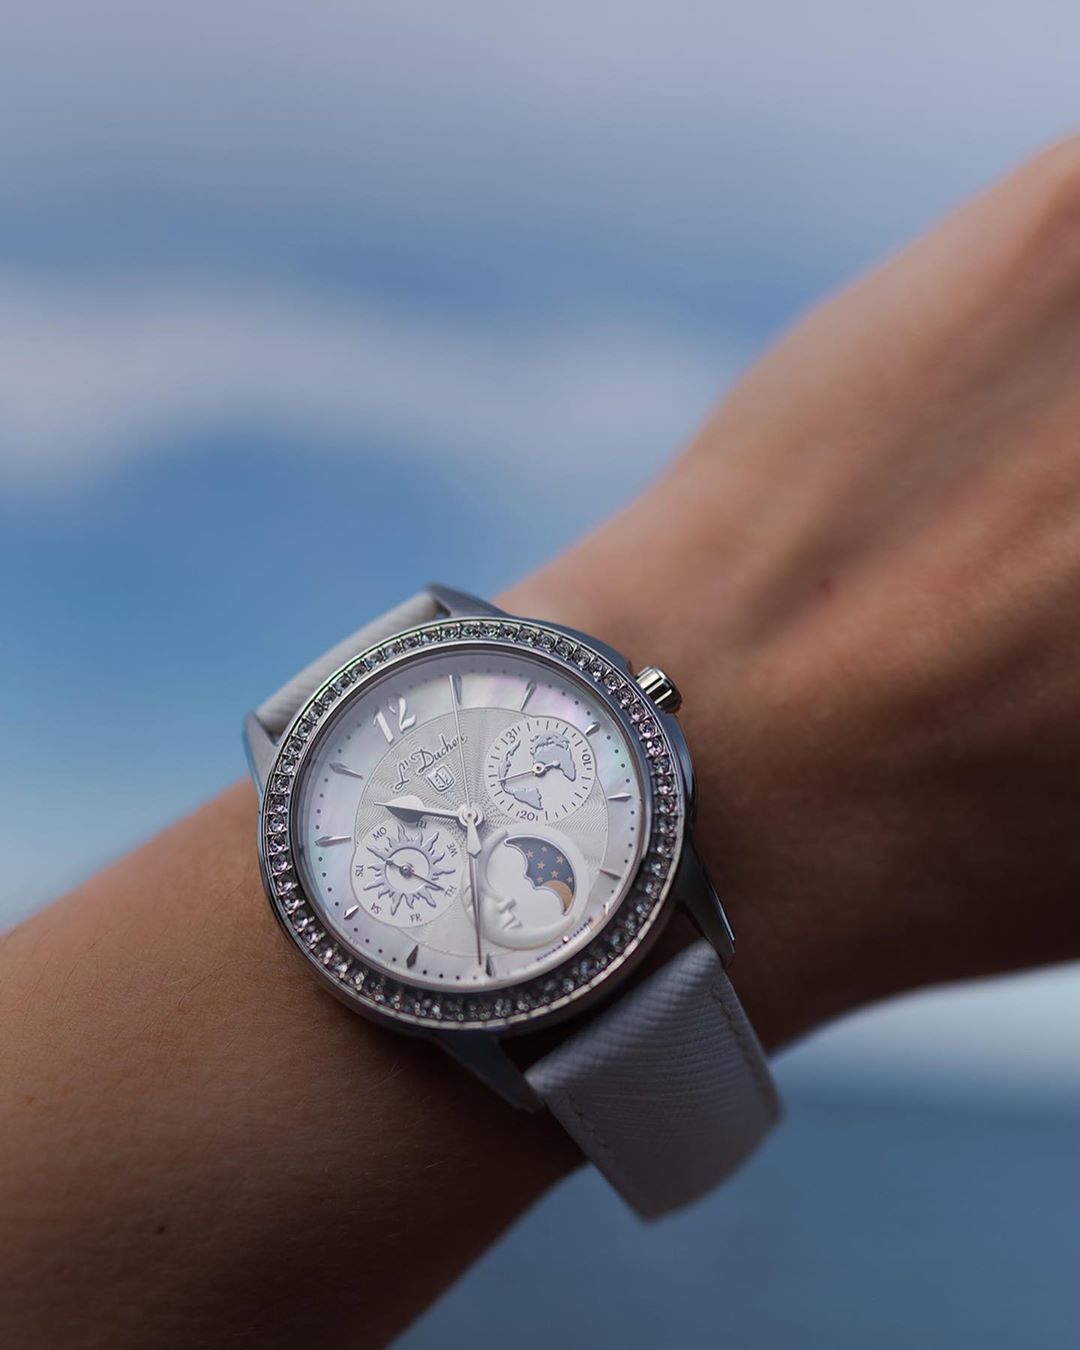 Изумительные женские часы Celeste швейцарского бренда L’Duchen с лунным календарем.